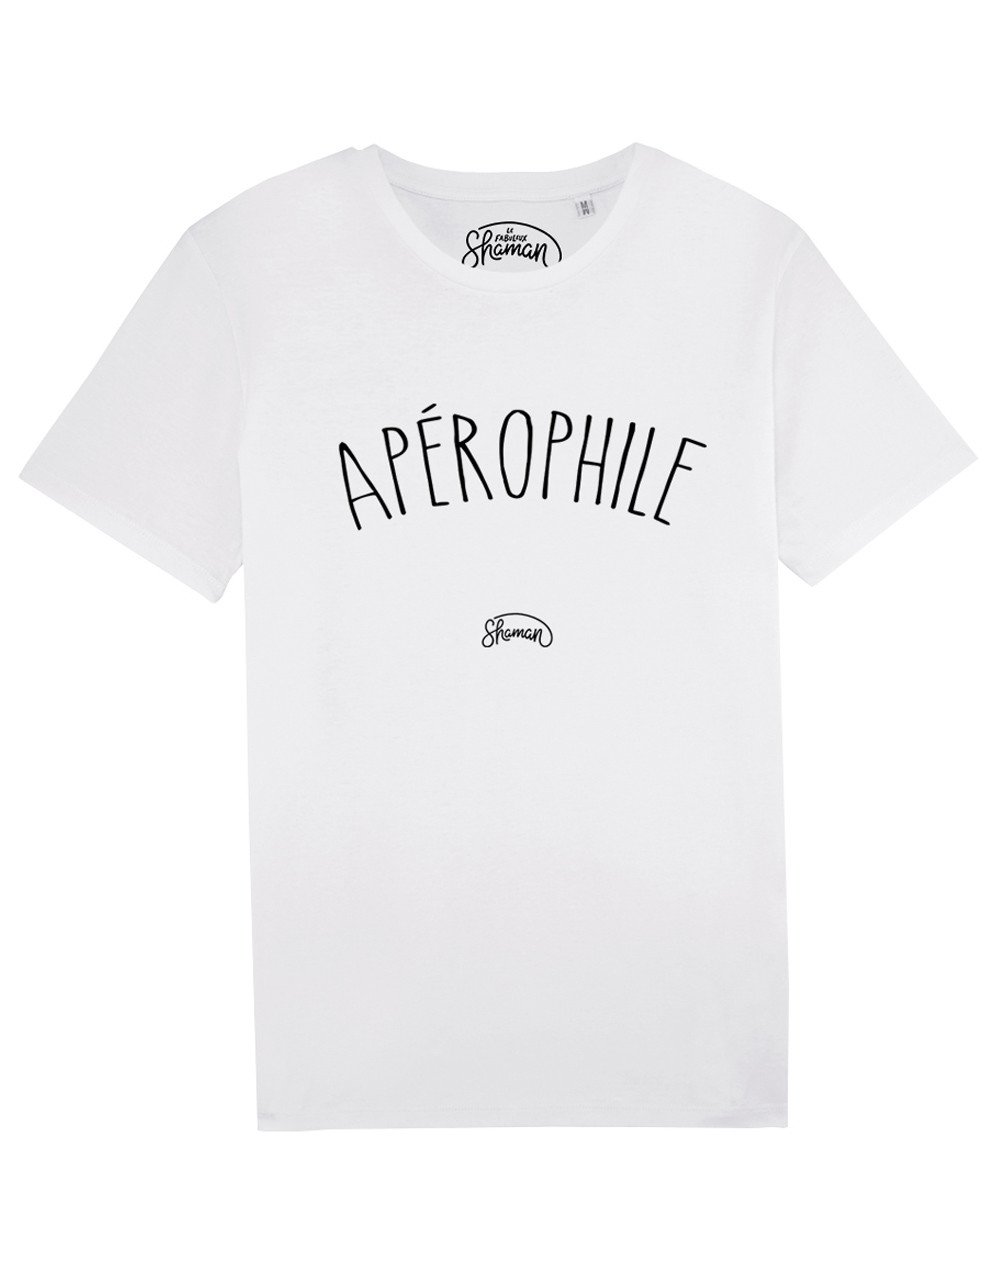 Tee shirt "Apérophile"